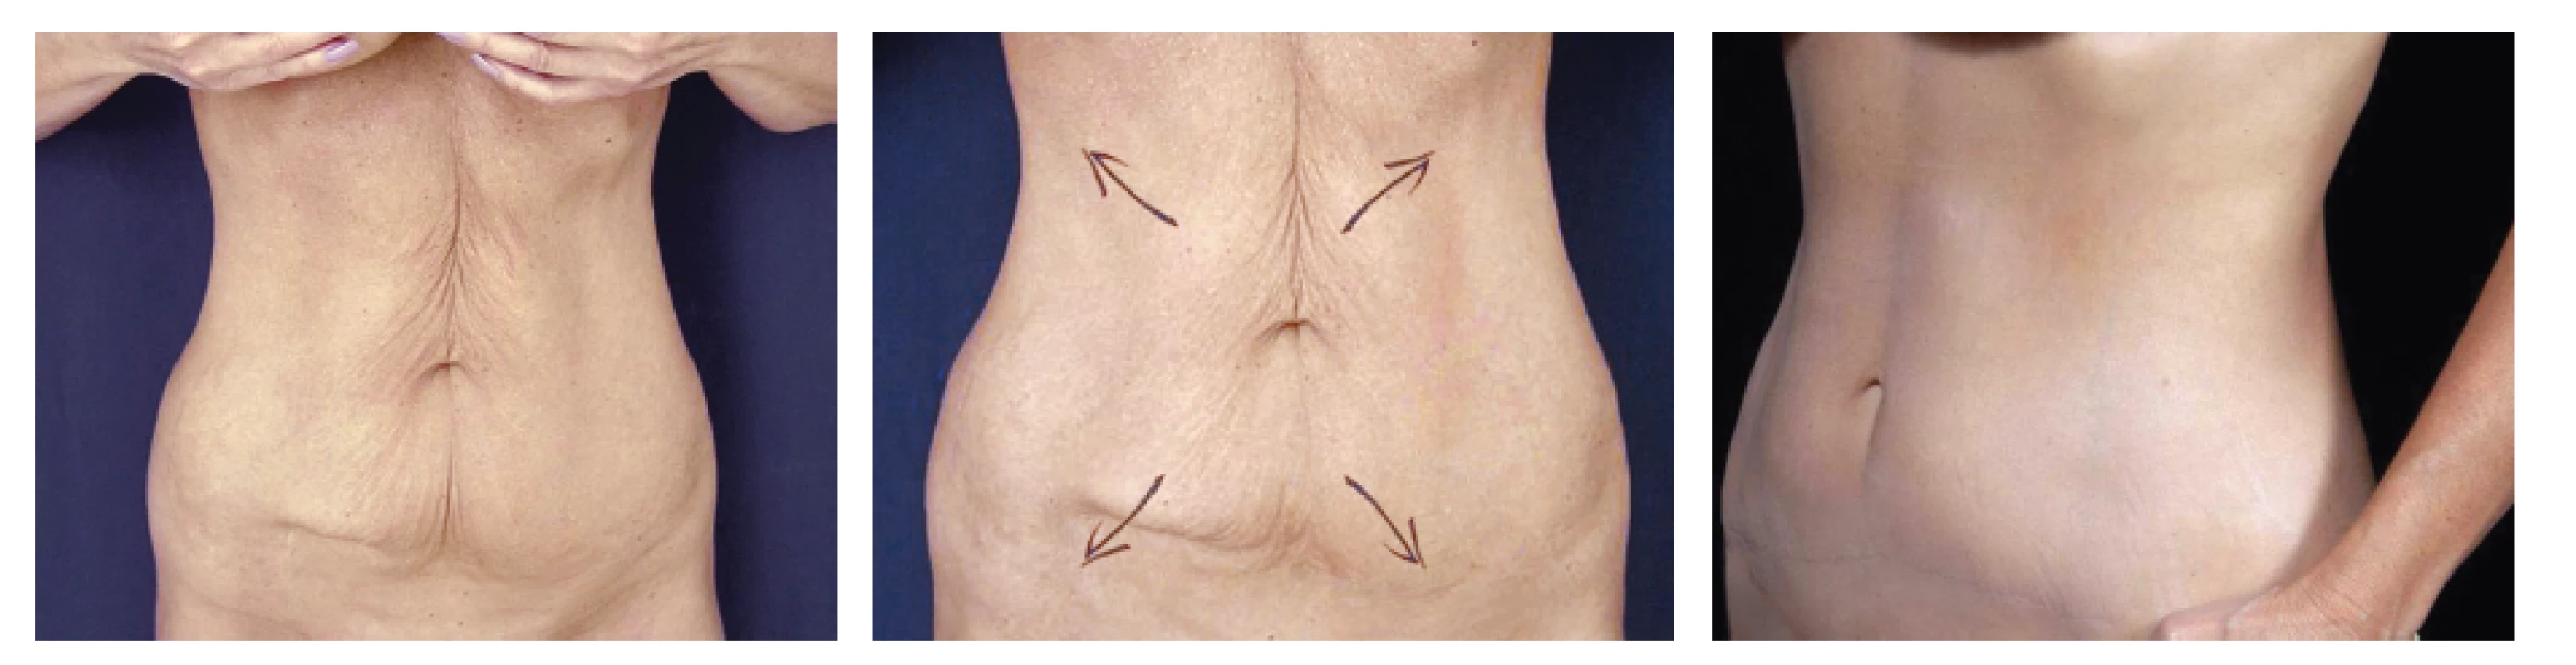 Horní a dolní miniabdominoplastika u 59 leté ženy
Fig. 6: Upper and lower abdominoplasty in a 59 year old female